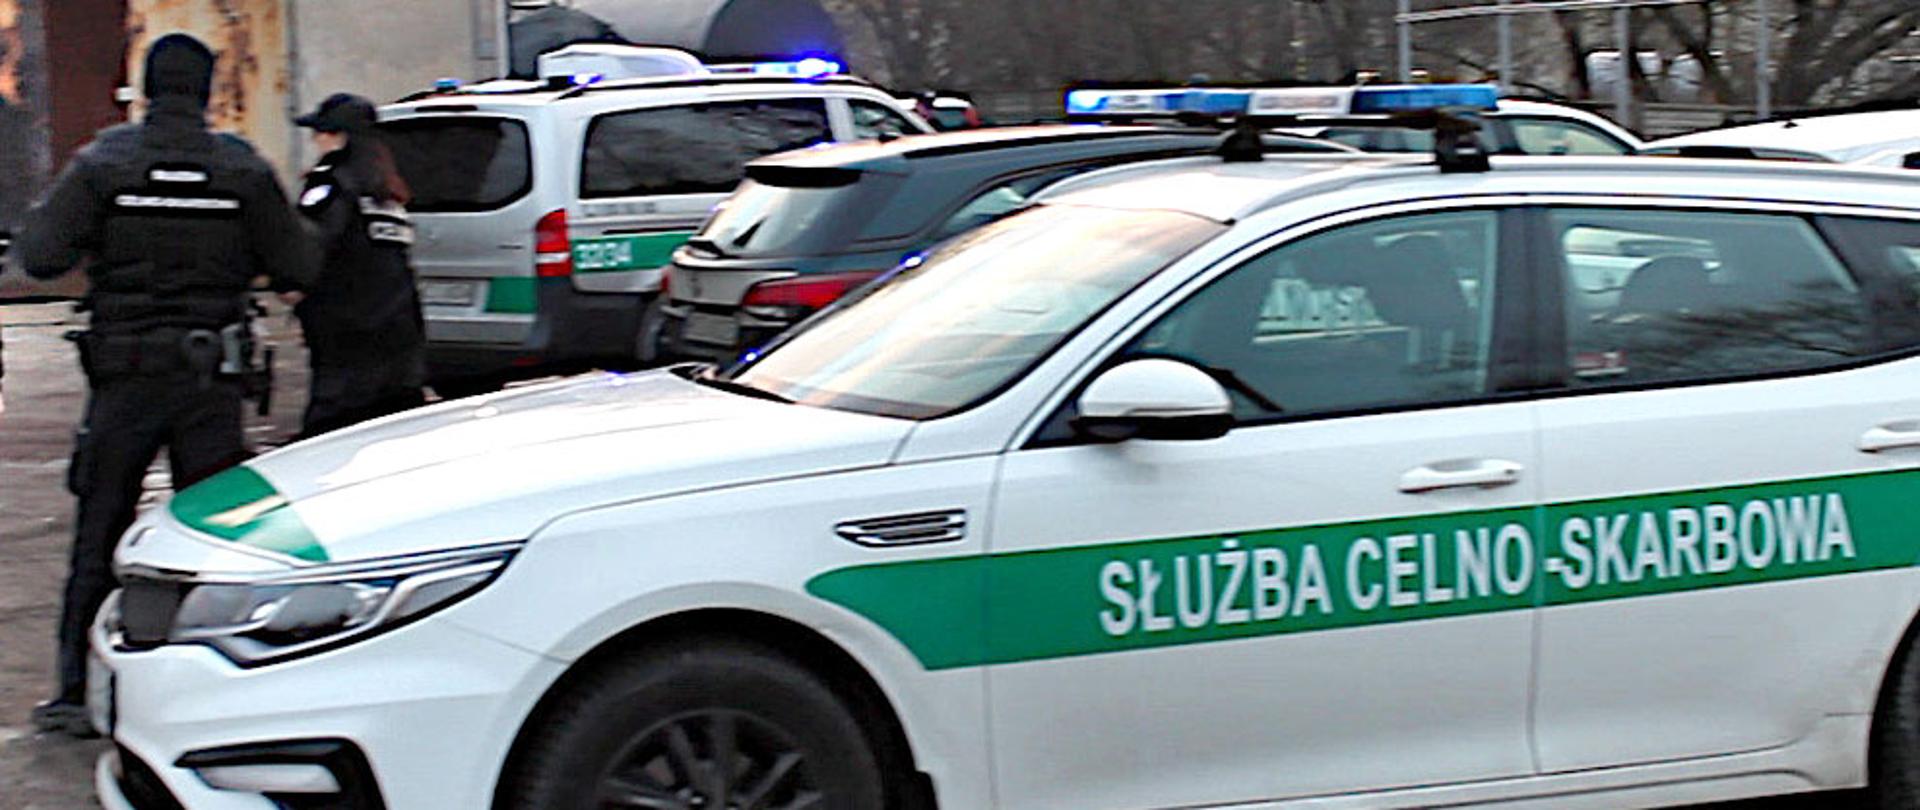 Samochód z napisem Służba Celno-Skarbowa i funkcjonariusze KAS.